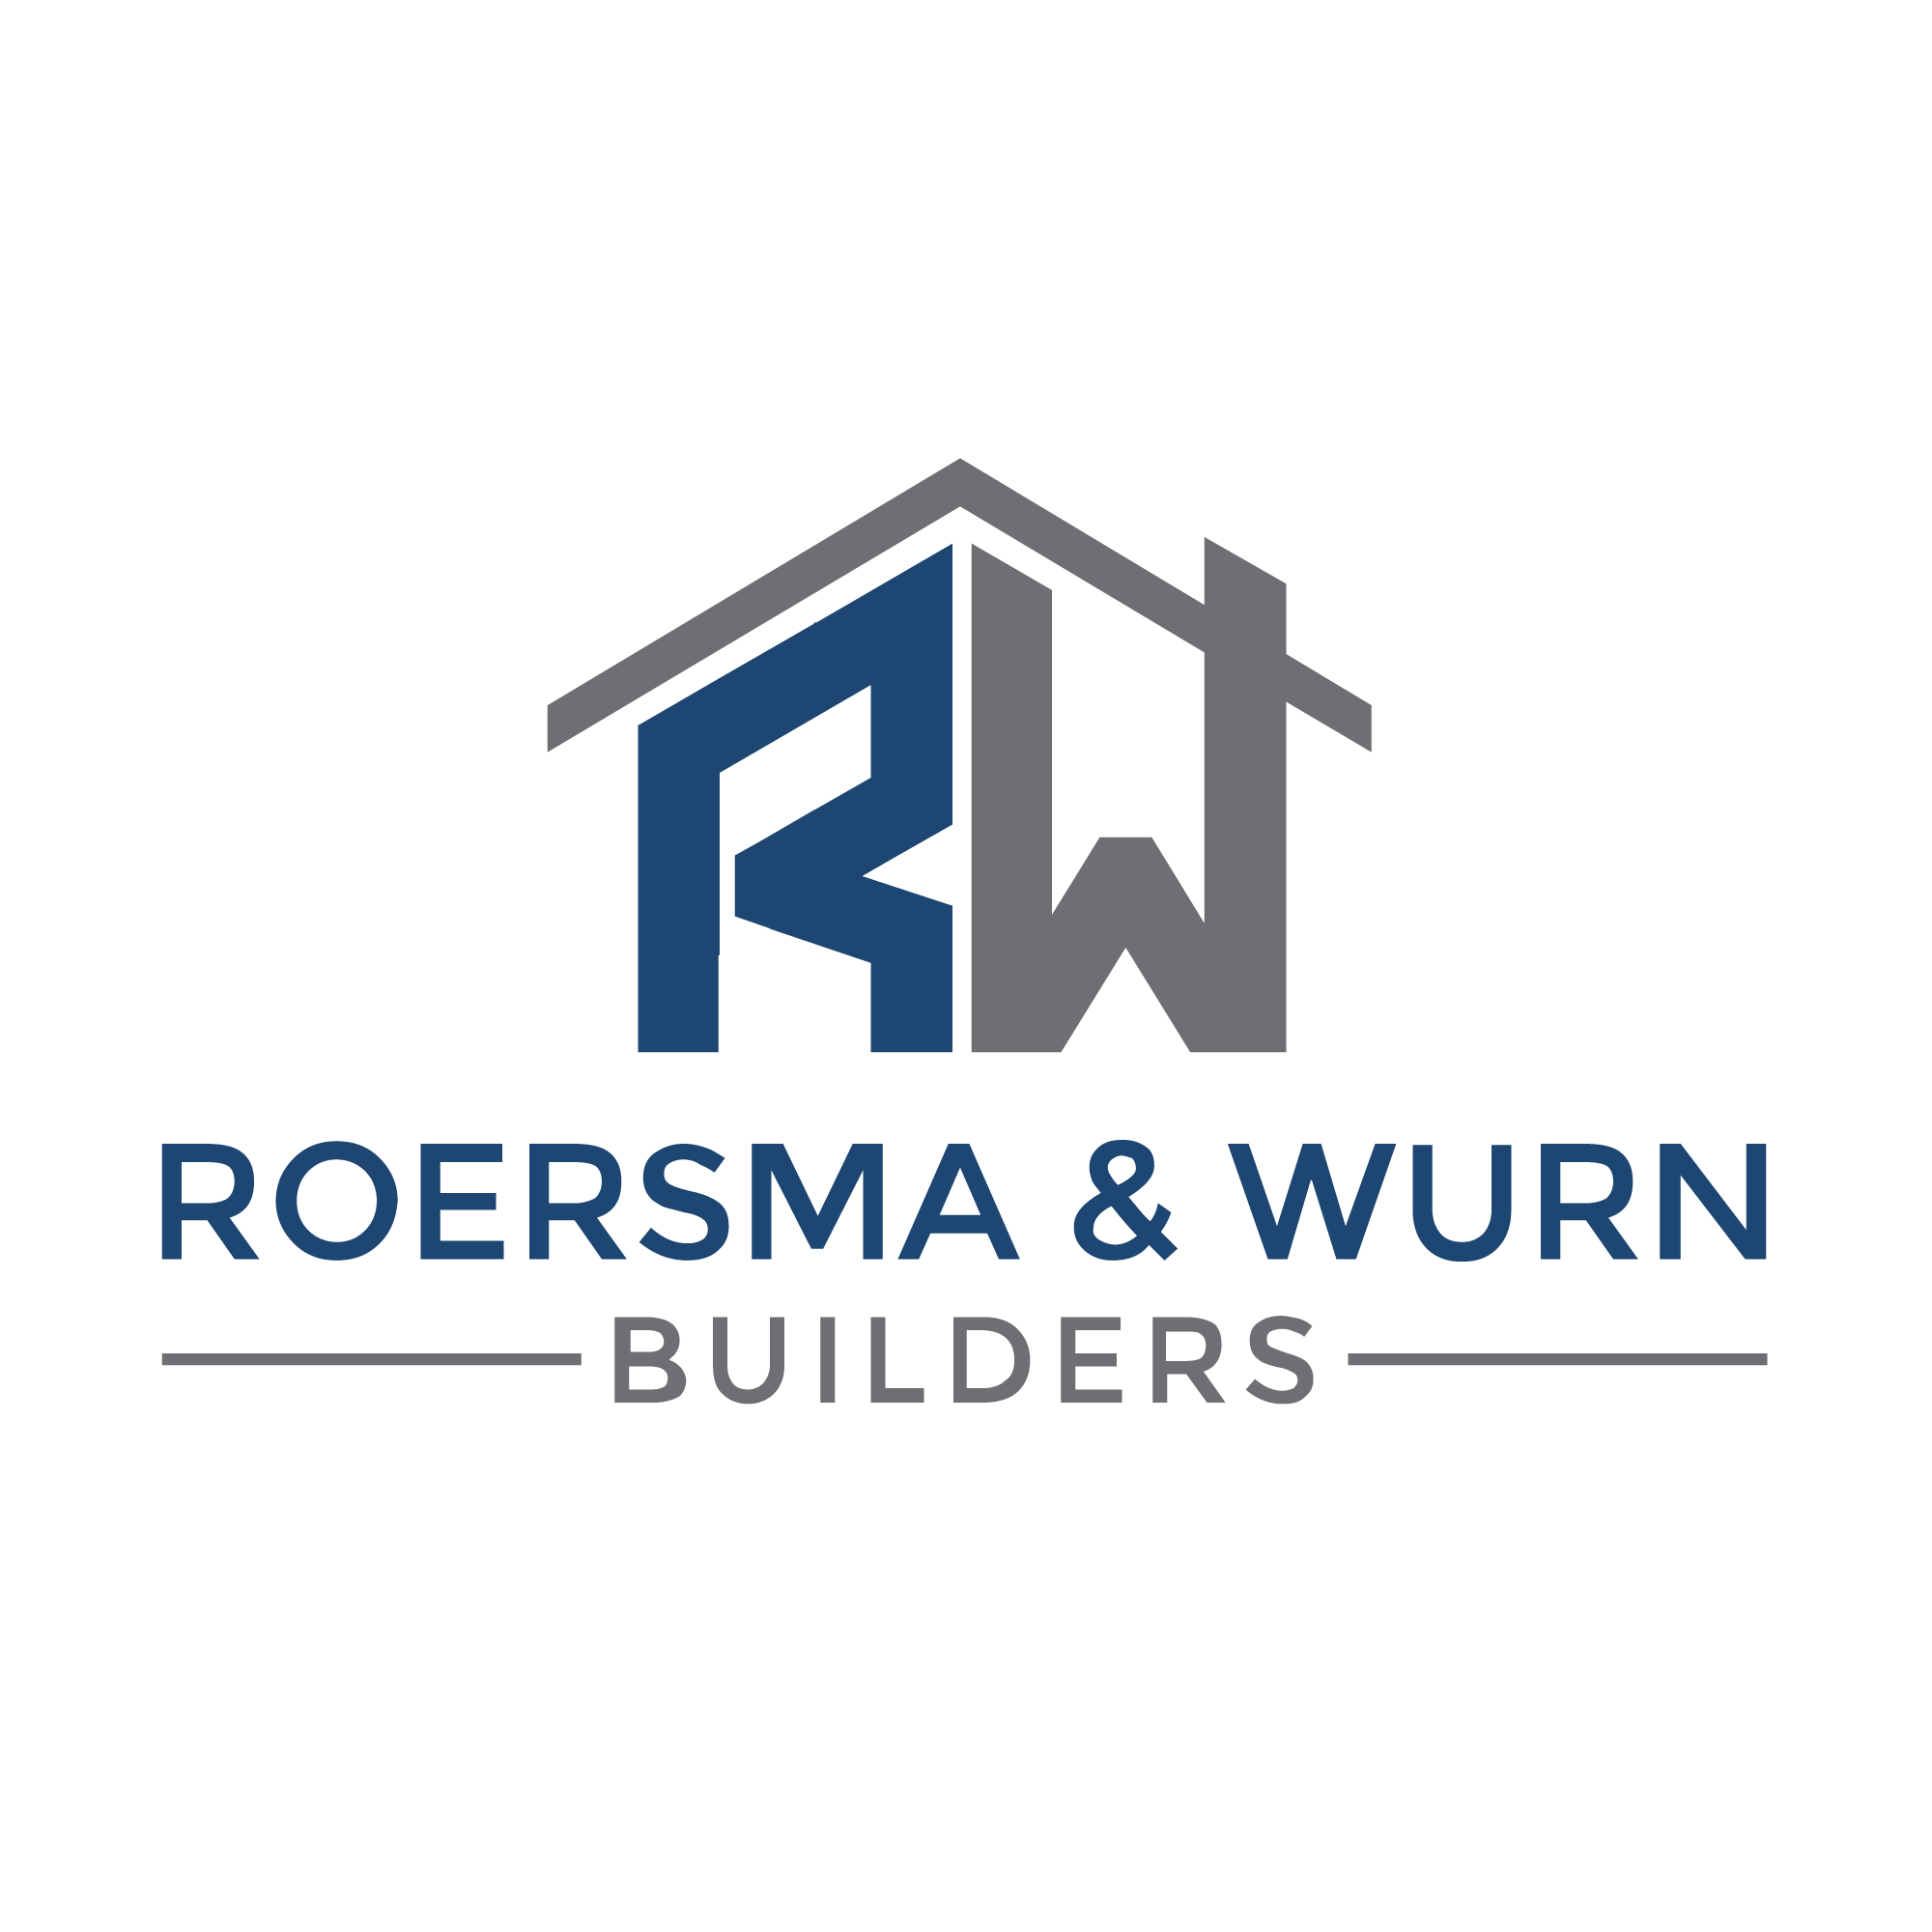 Mark Wurn, Owner, Roersma & Wurn Builders Inc.